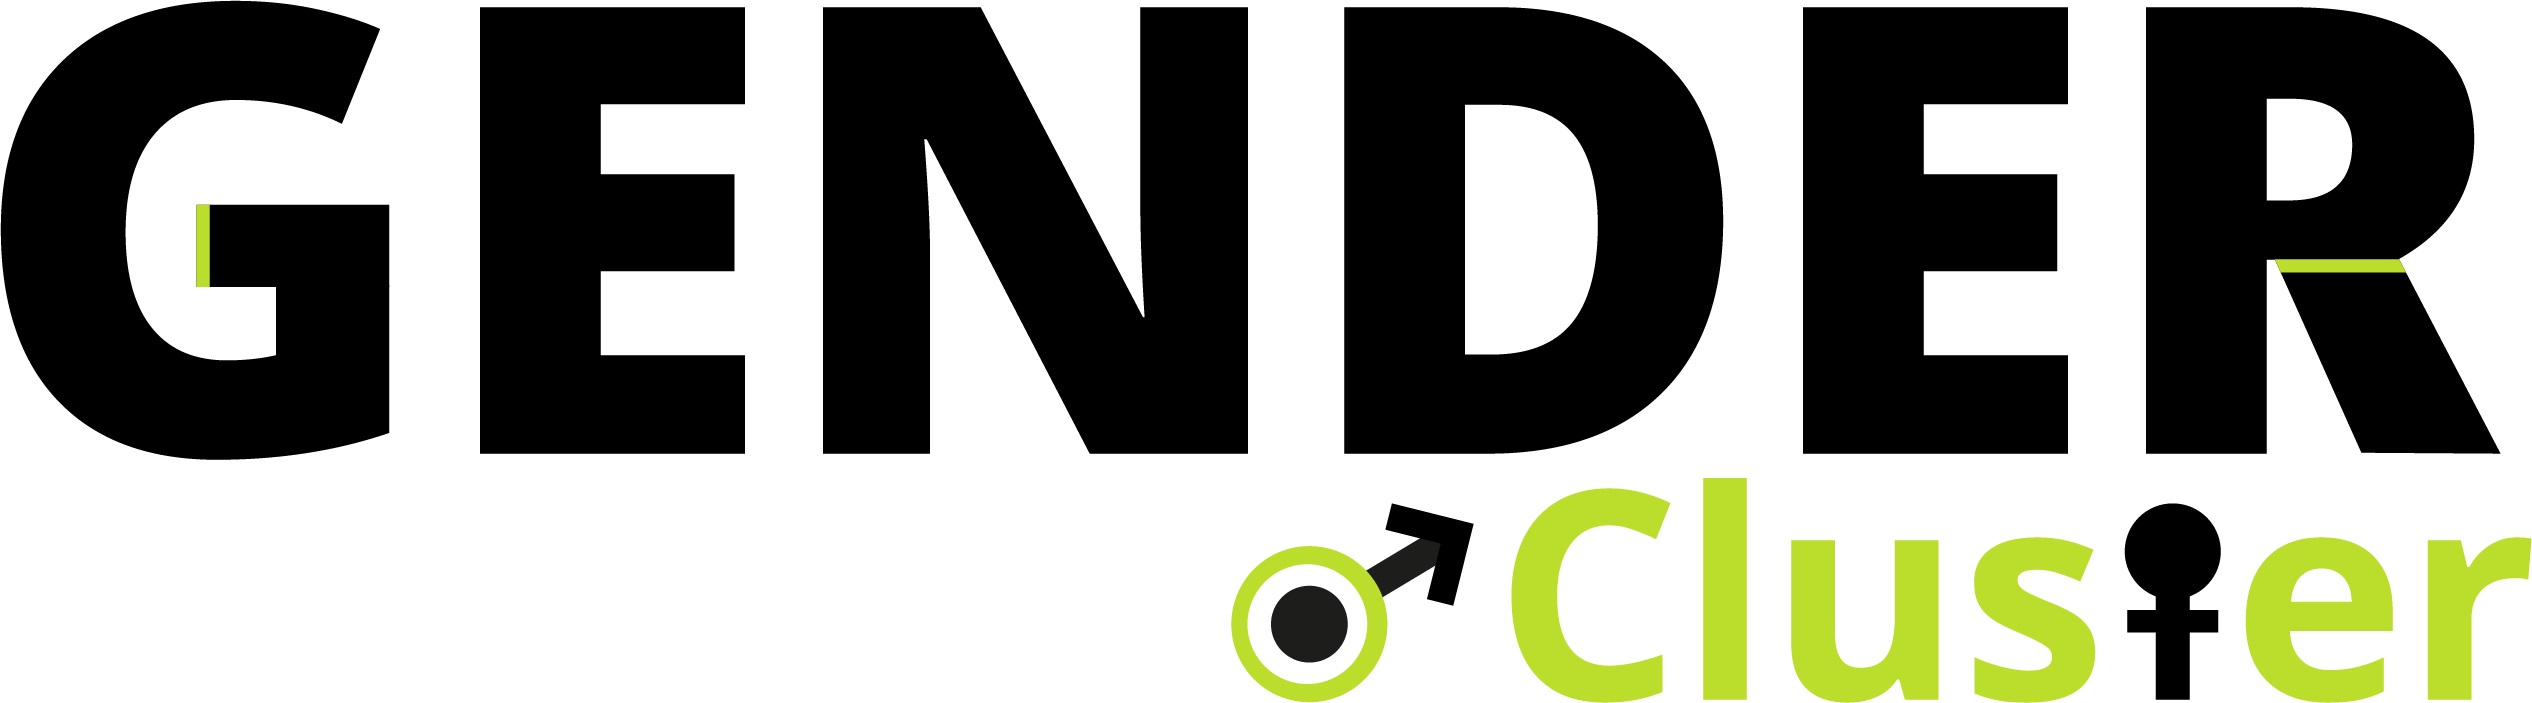 Logo GENDER